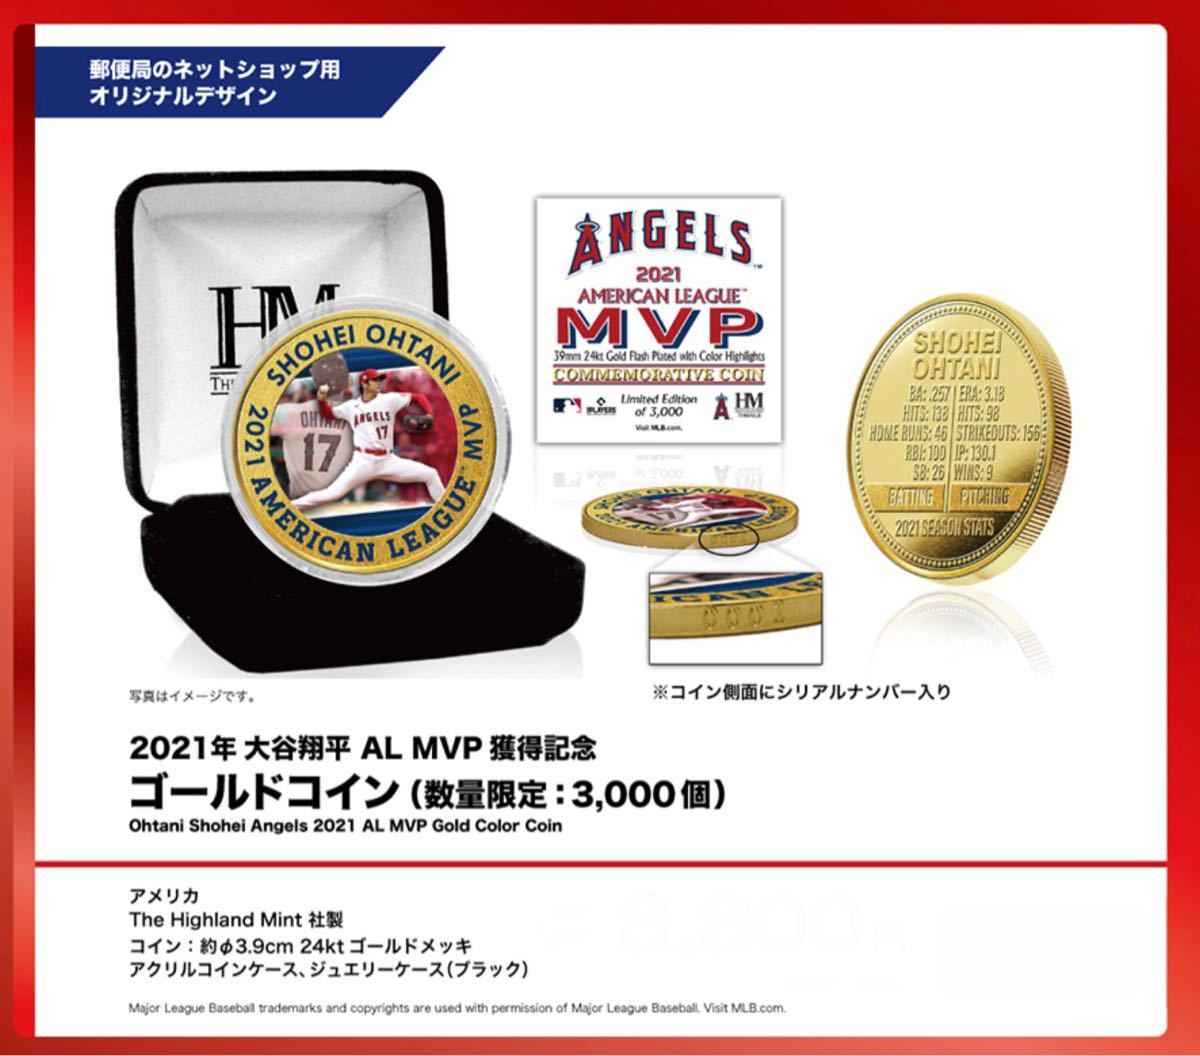 2021年大谷翔平AL MVP 獲得記念ゴールドコイン(数量限定:3,000個)